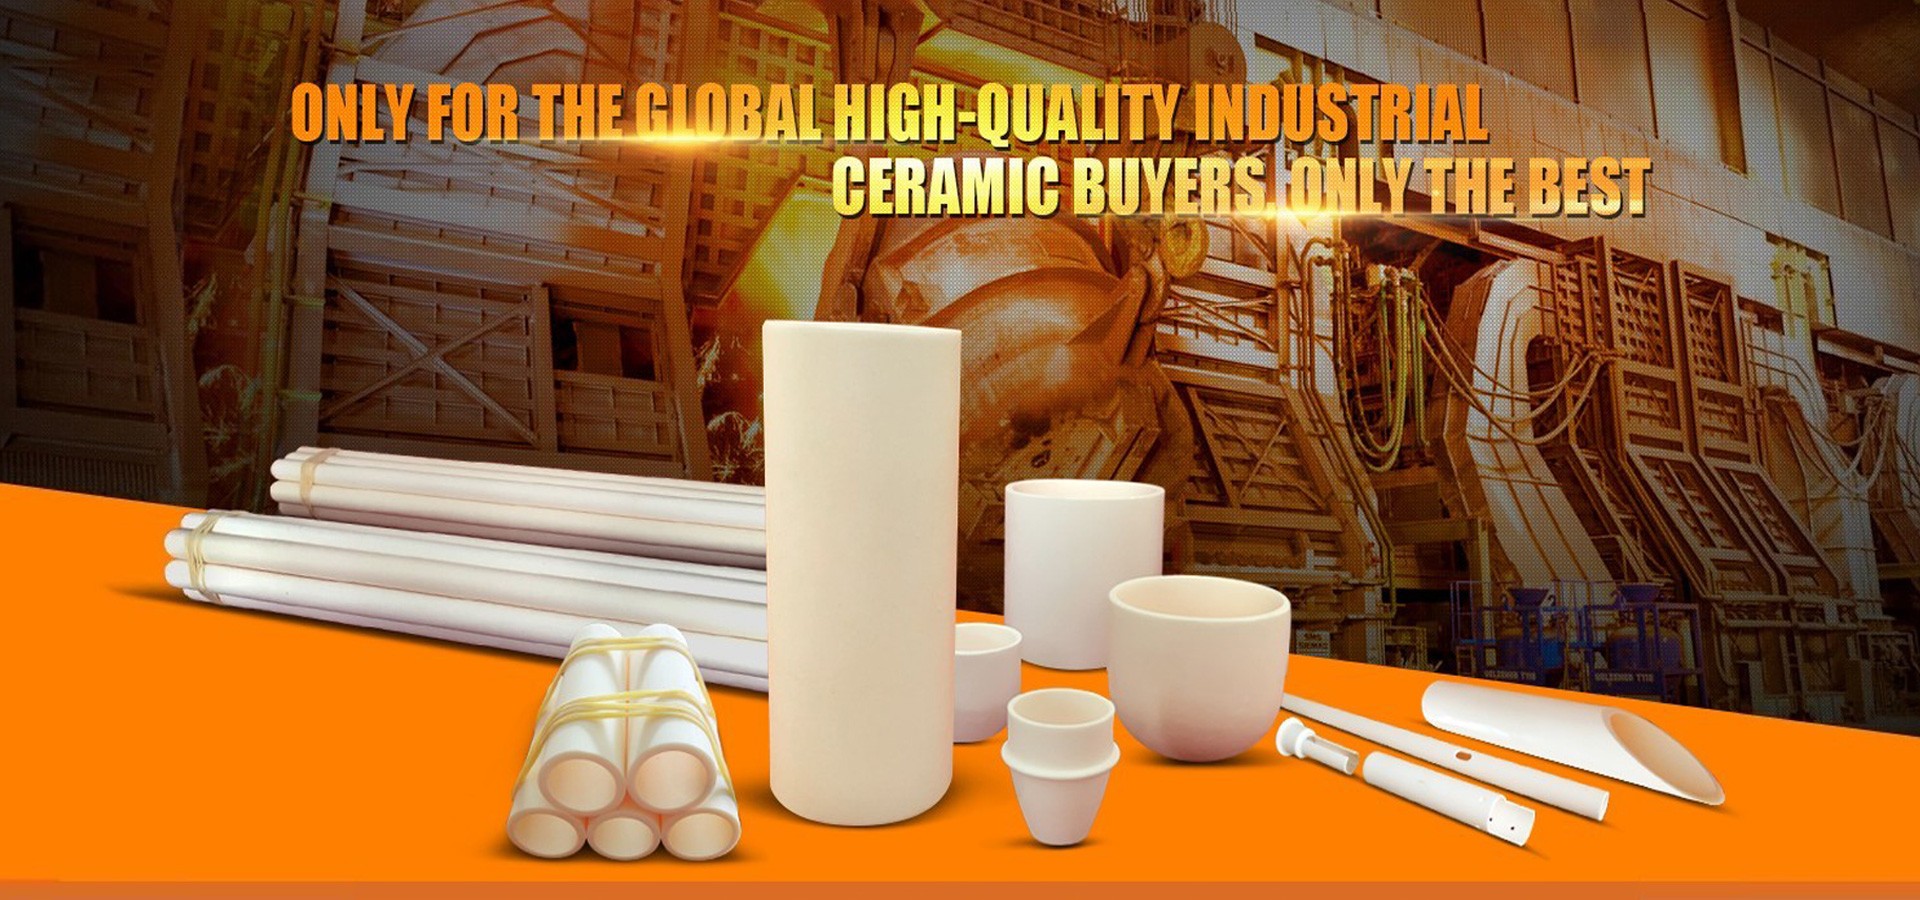 Alumina Ceramic Tube